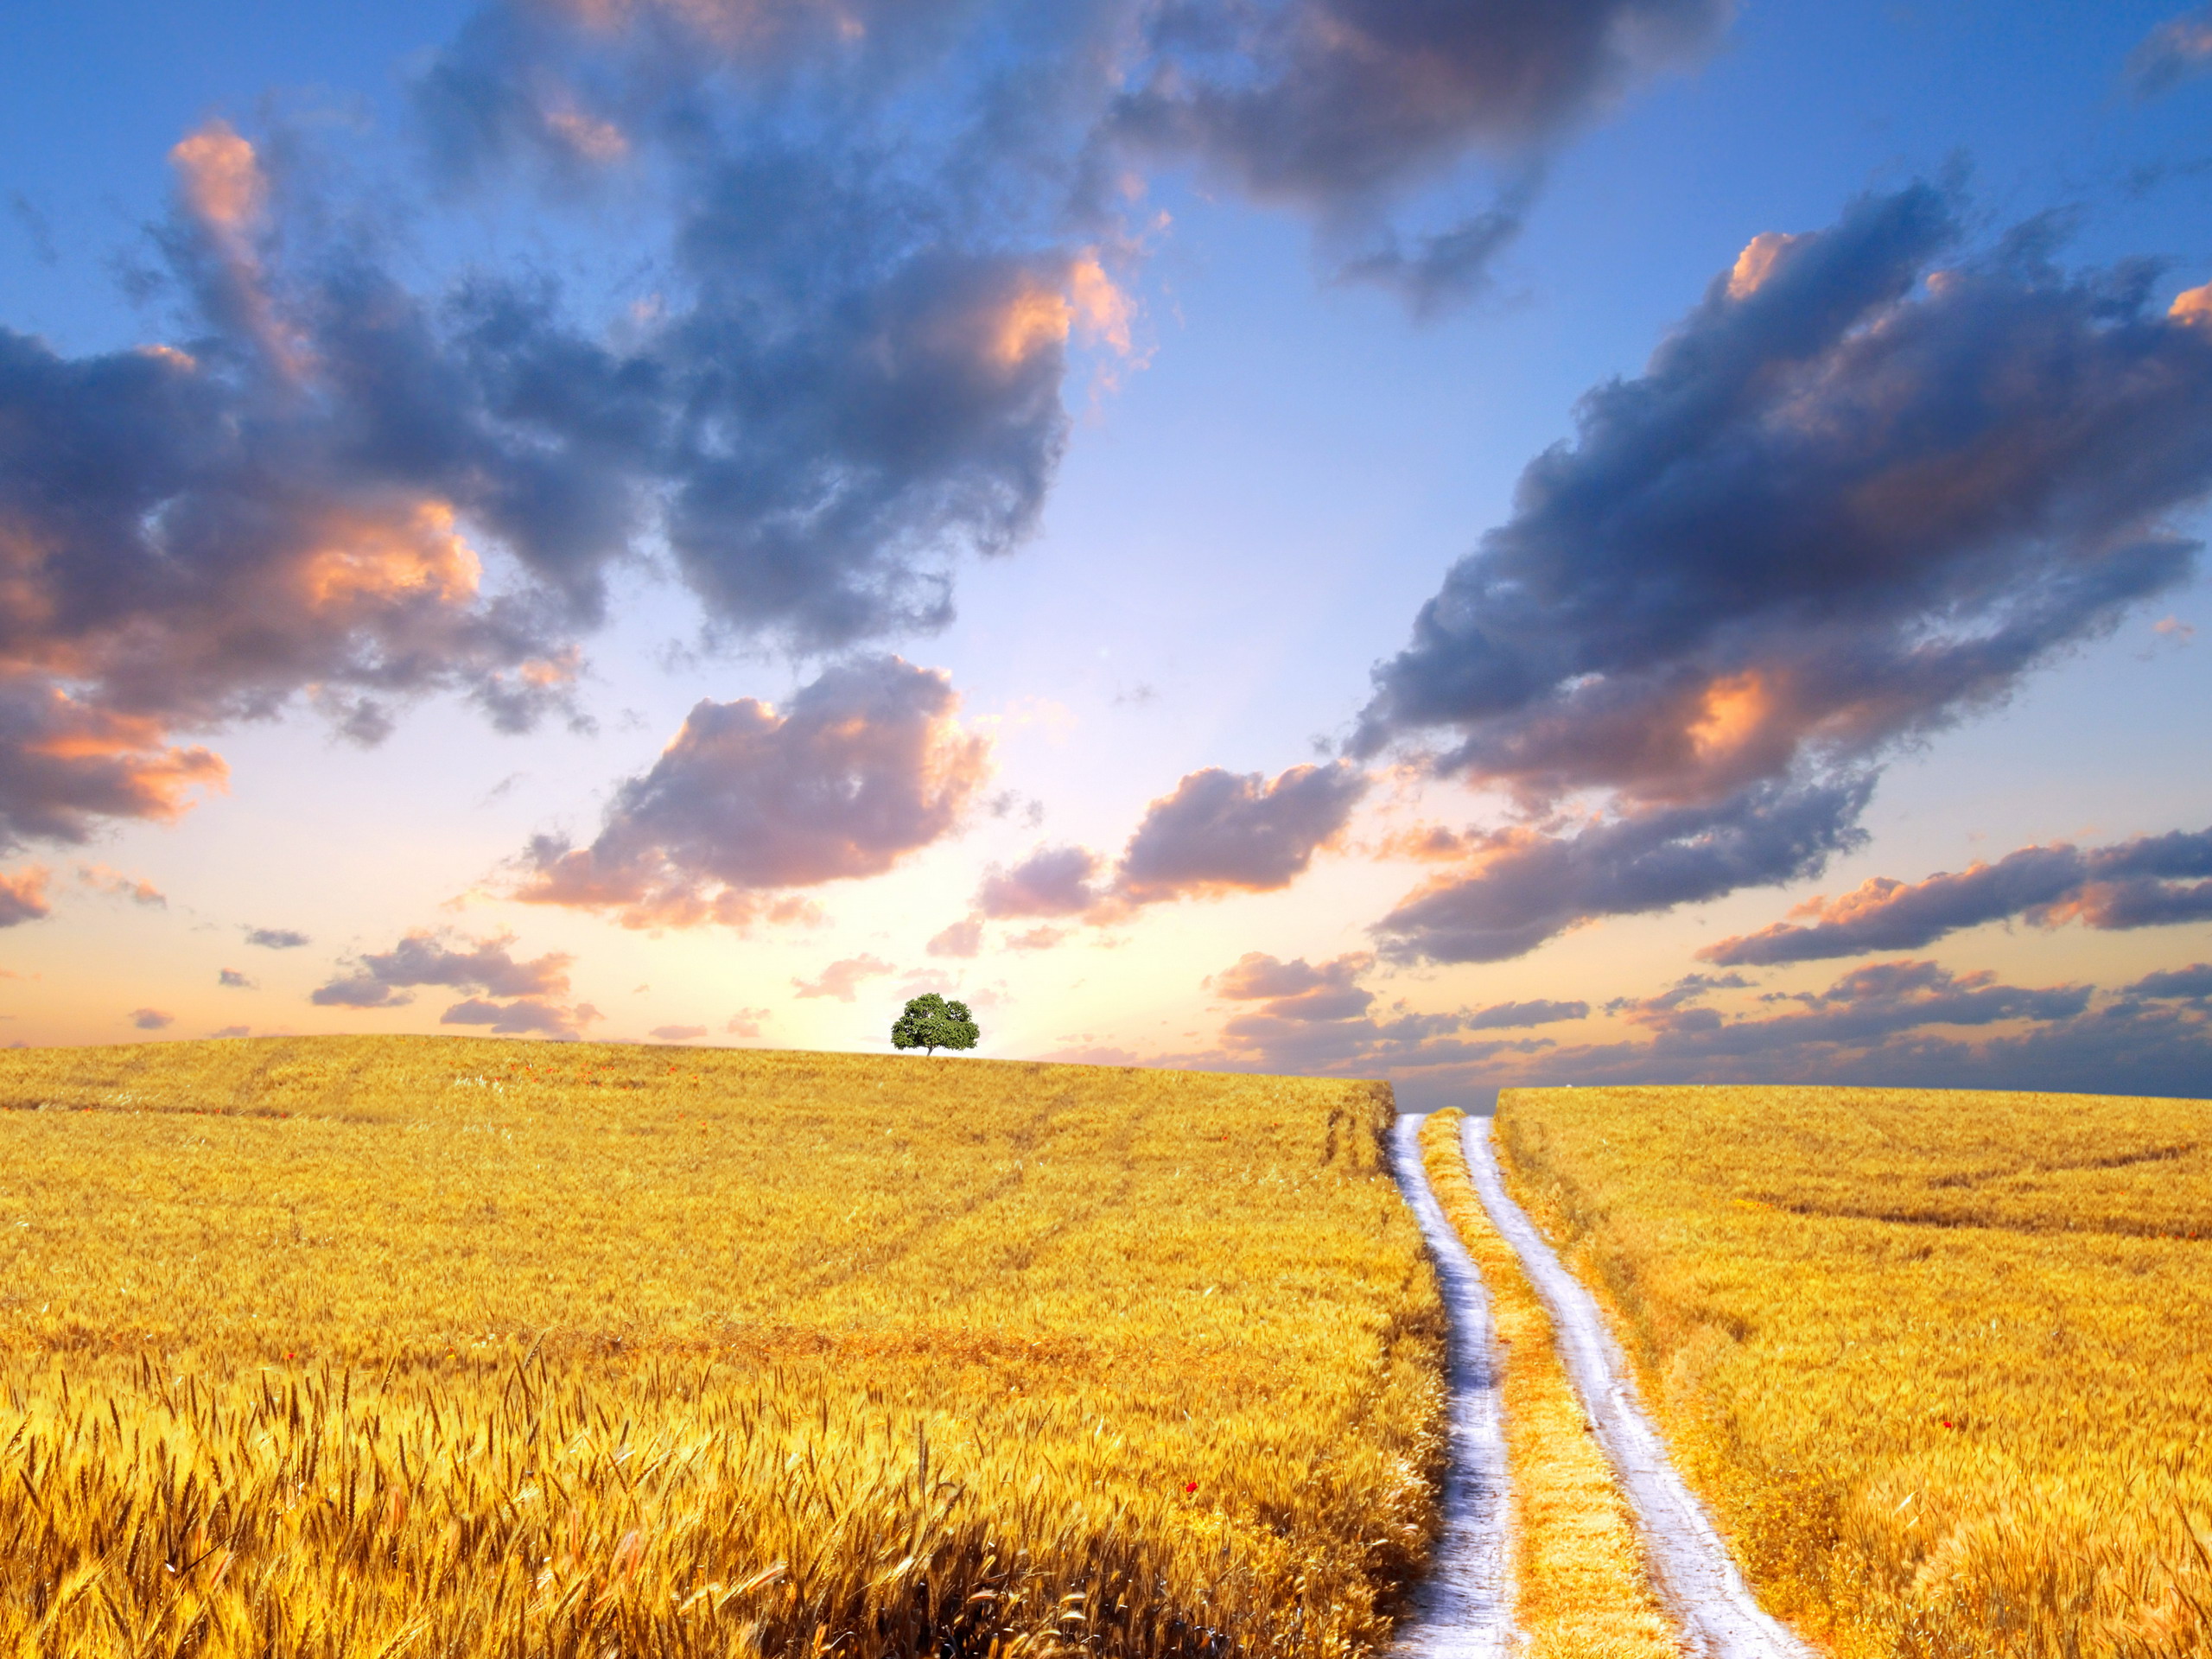 Никитин стихотворение в синем небе. Поле пшеницы. Красивое поле. Дорога в поле пшеницы. Красивое поле пшеницы.